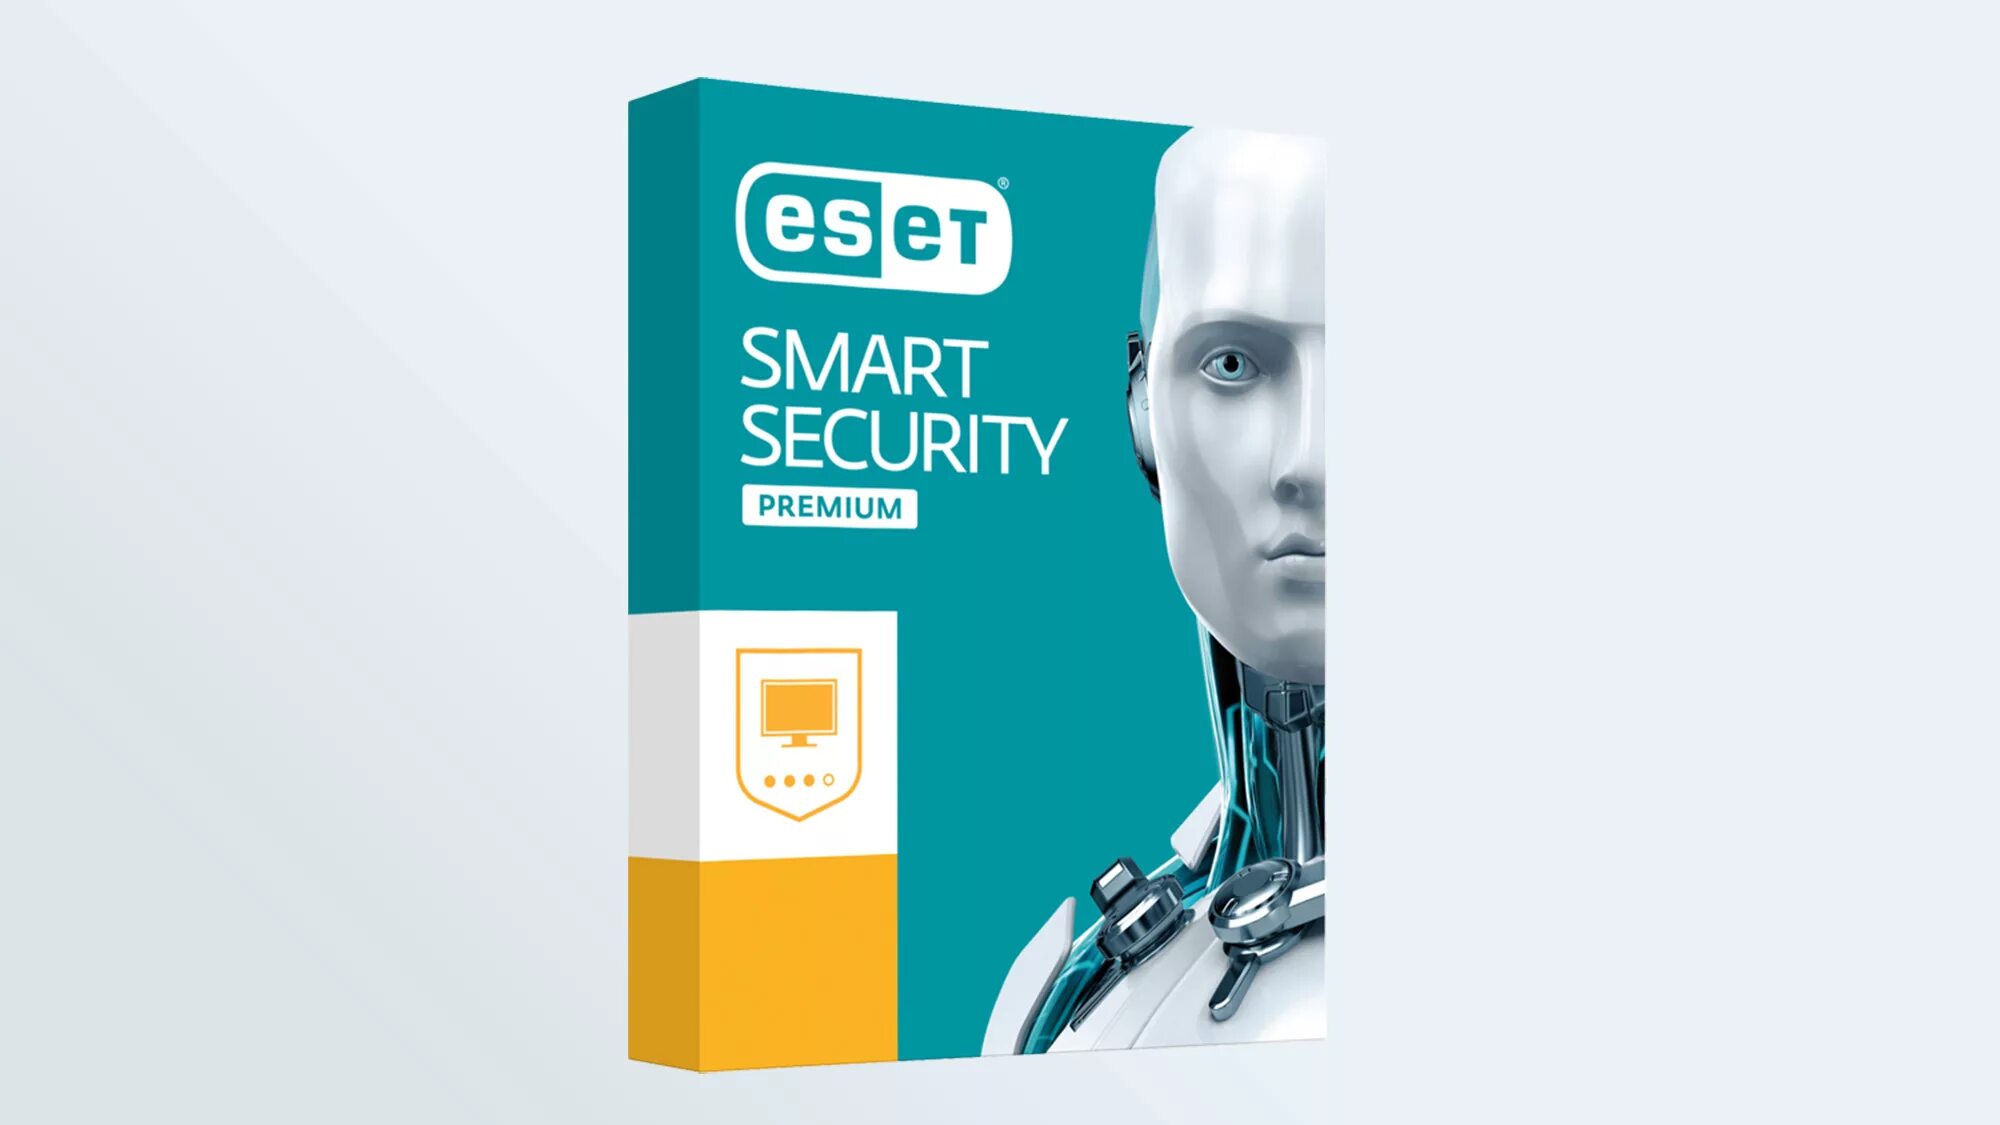 Антивирус ESET Smart Security. ESET Smart Security Premium. ESET nod32 антивирус. ESET Internet Security. Https антивирус